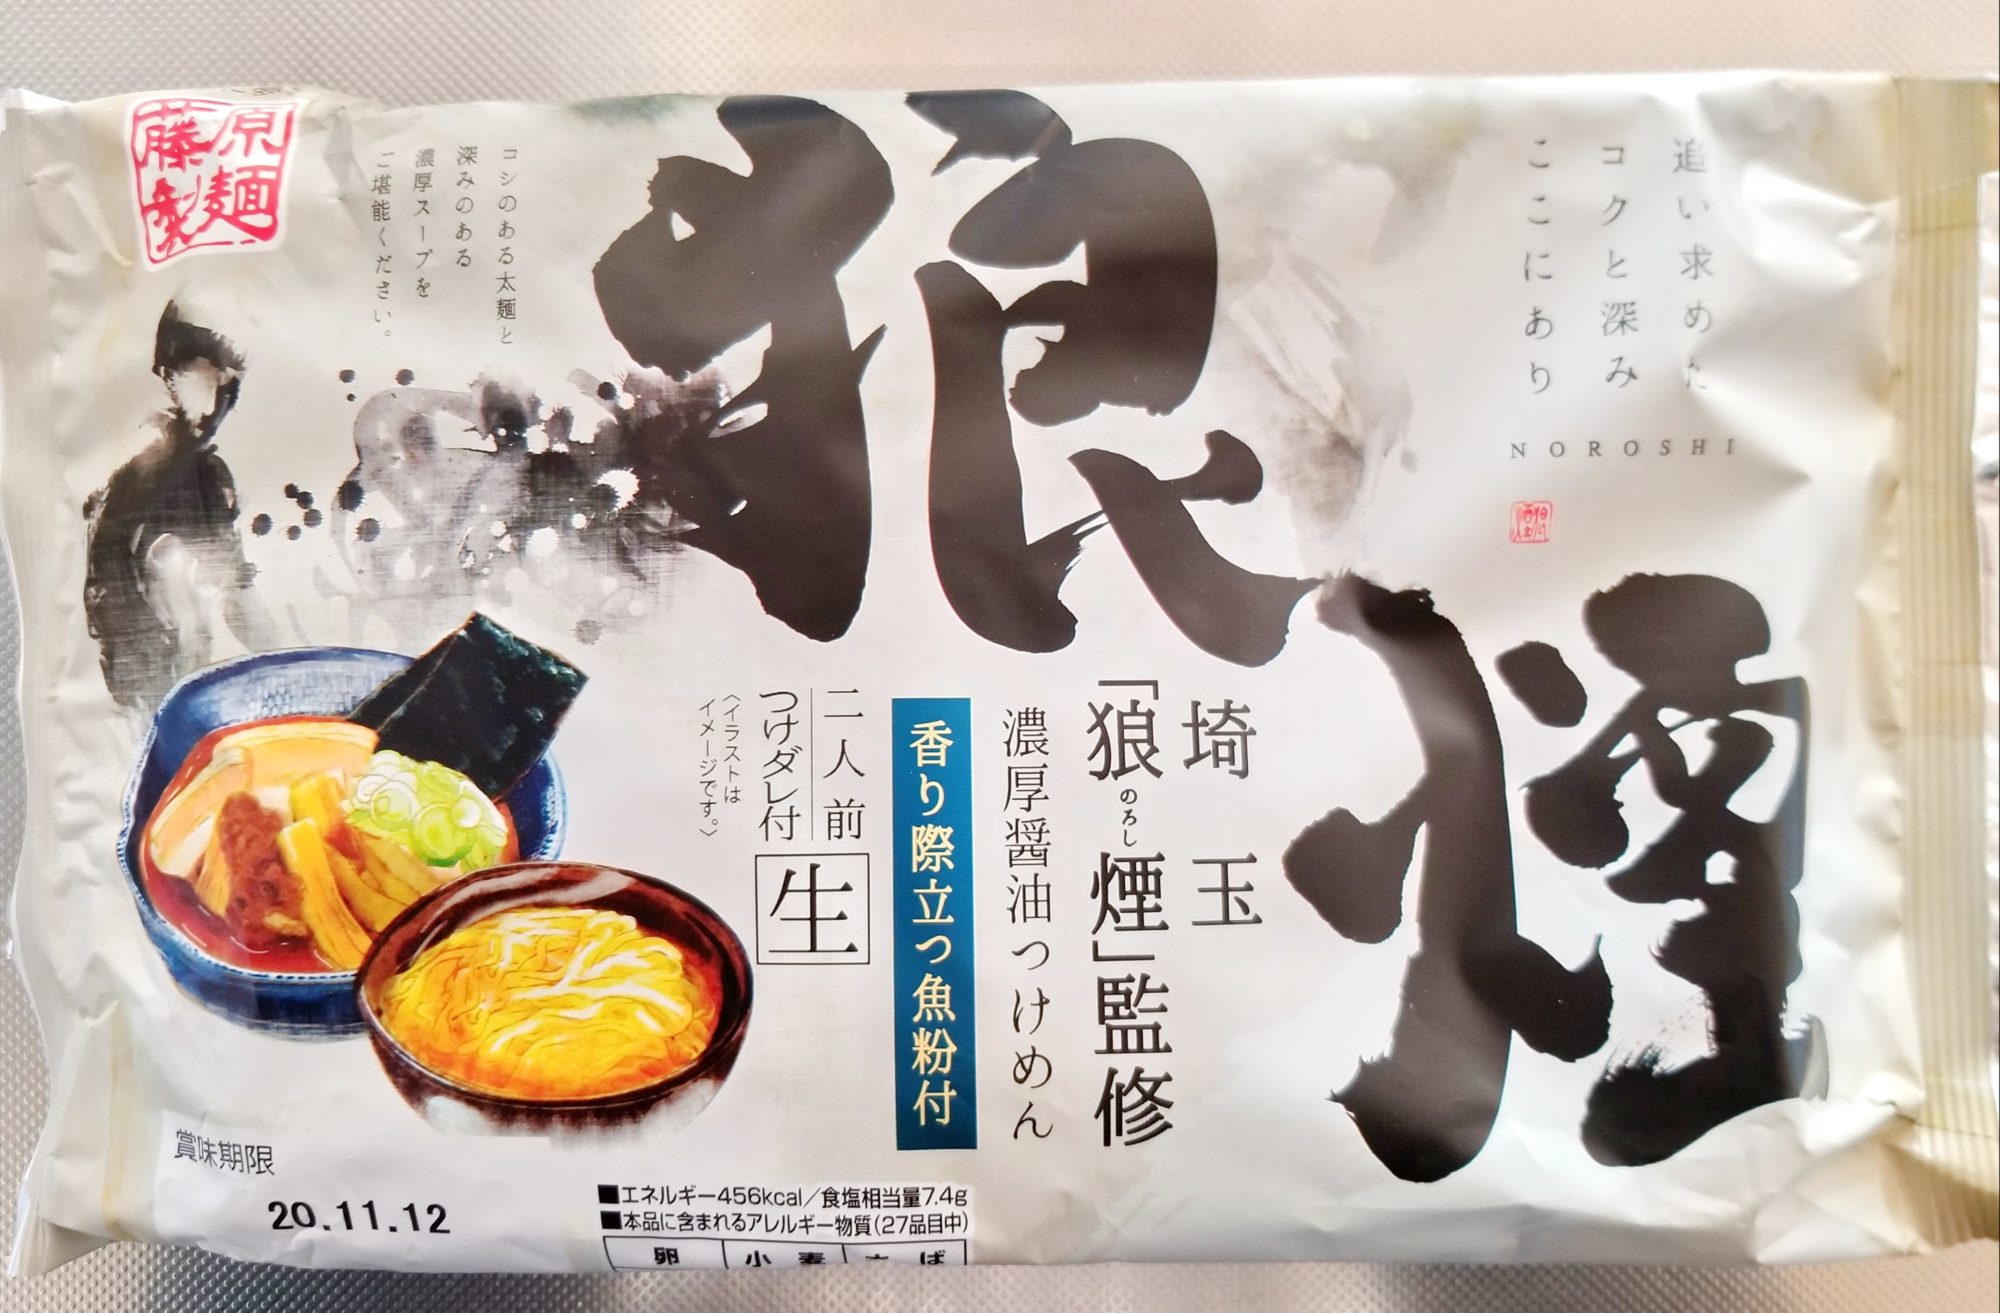 【大宮・つけ麺】狼煙NOROSHI・インスタント食の感想と店舗情報